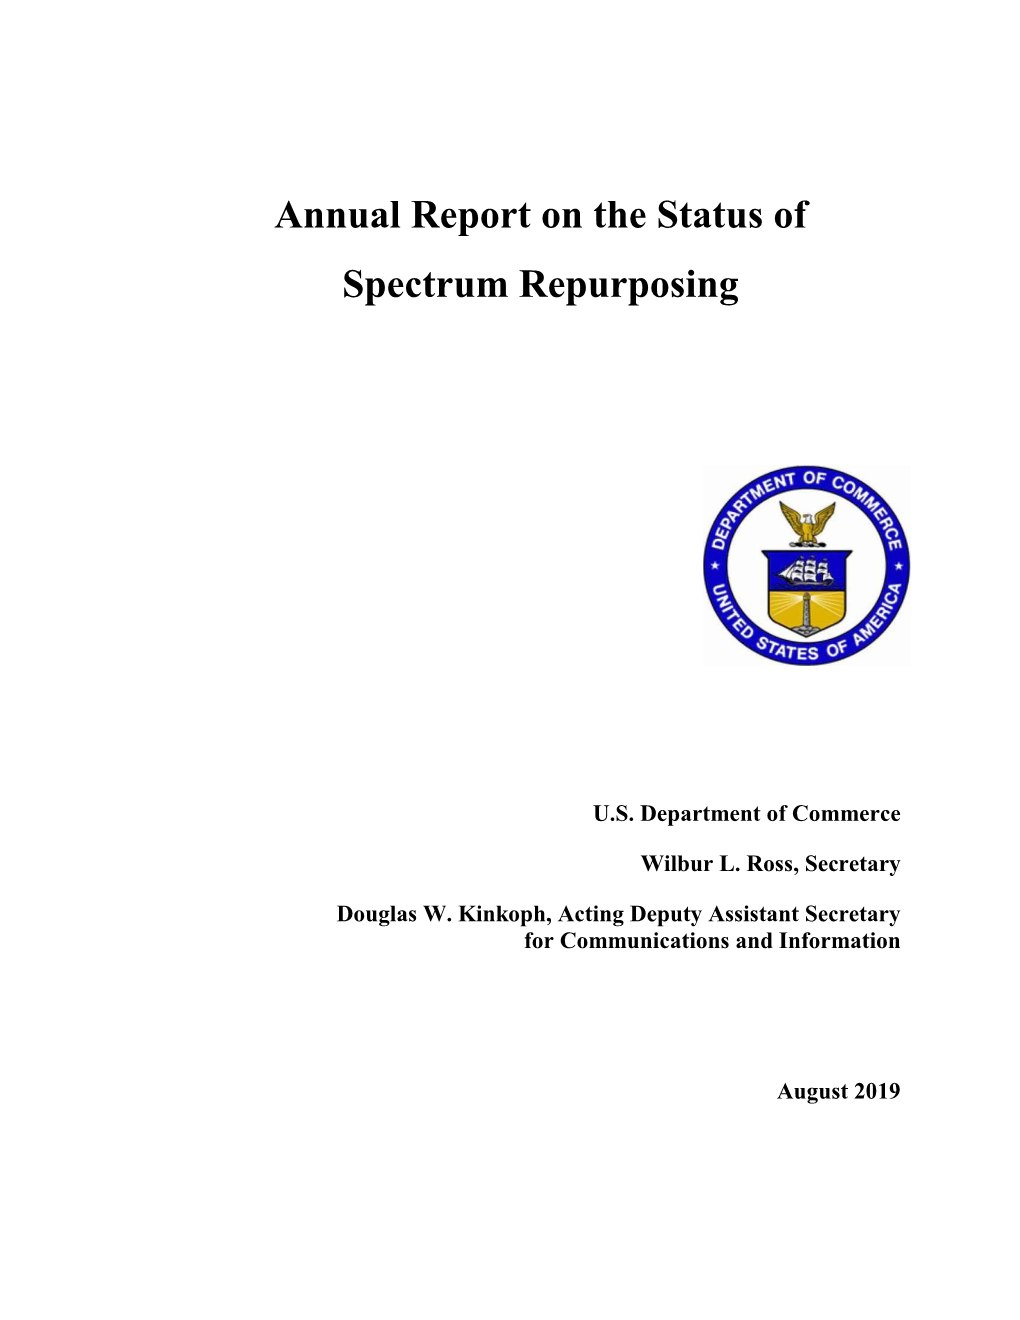 Annual Report on the Status of Spectrum Repurposing